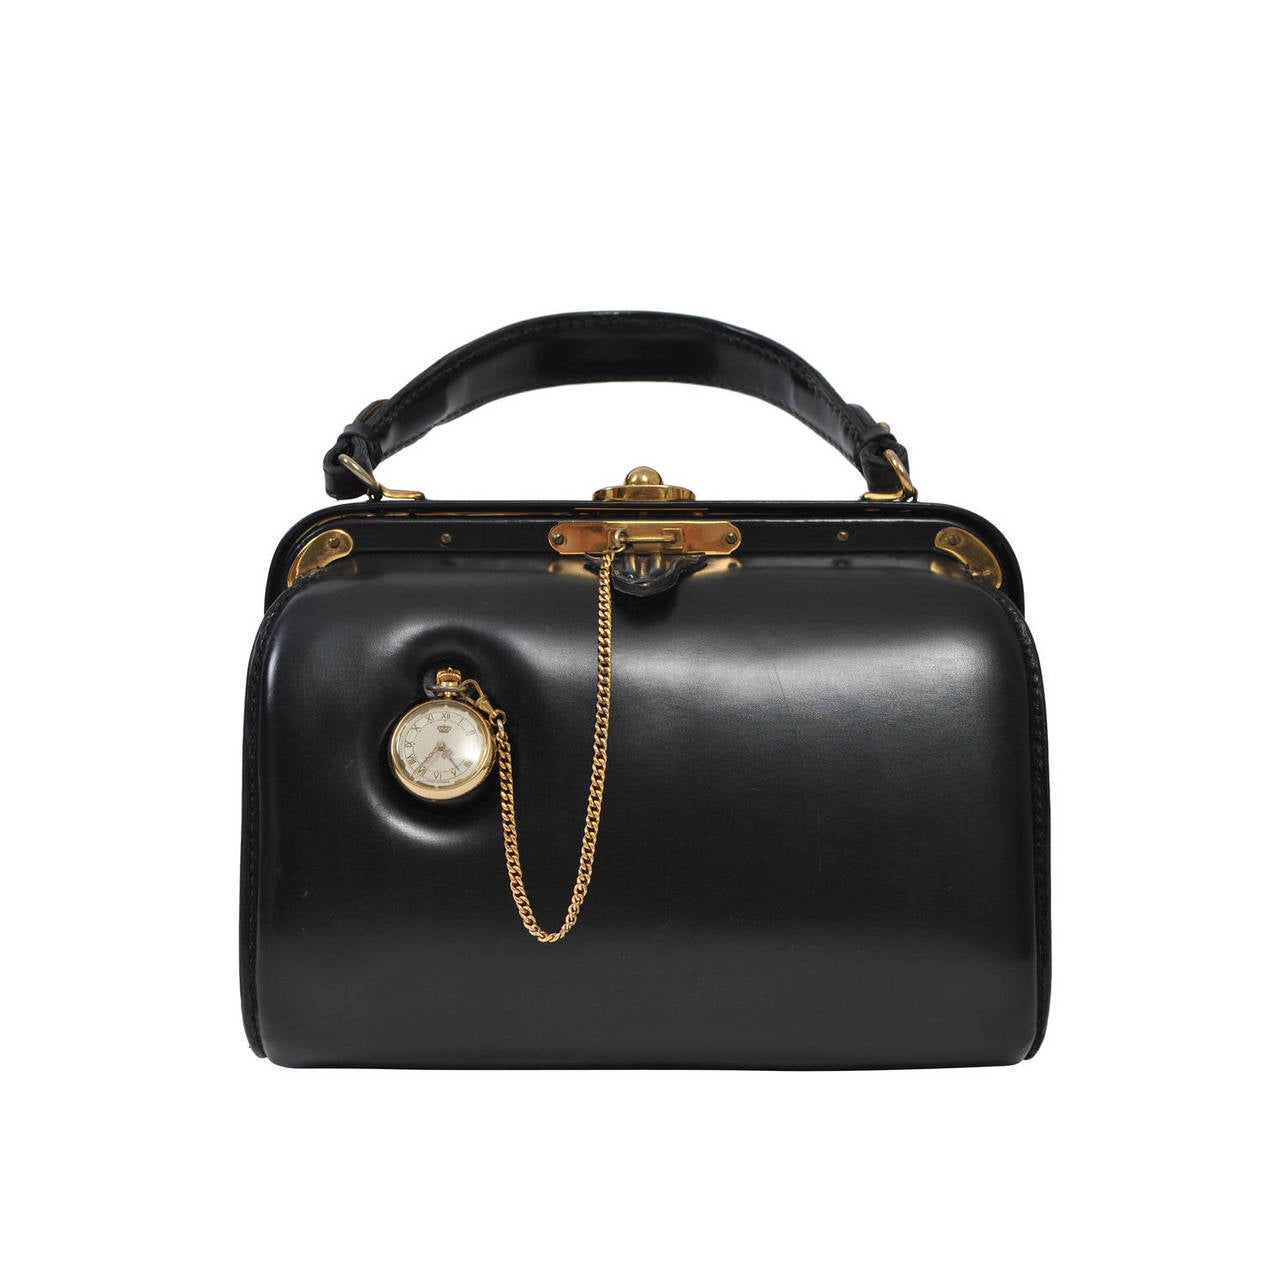 Lederer 1960s Black Leather Watch Handbag